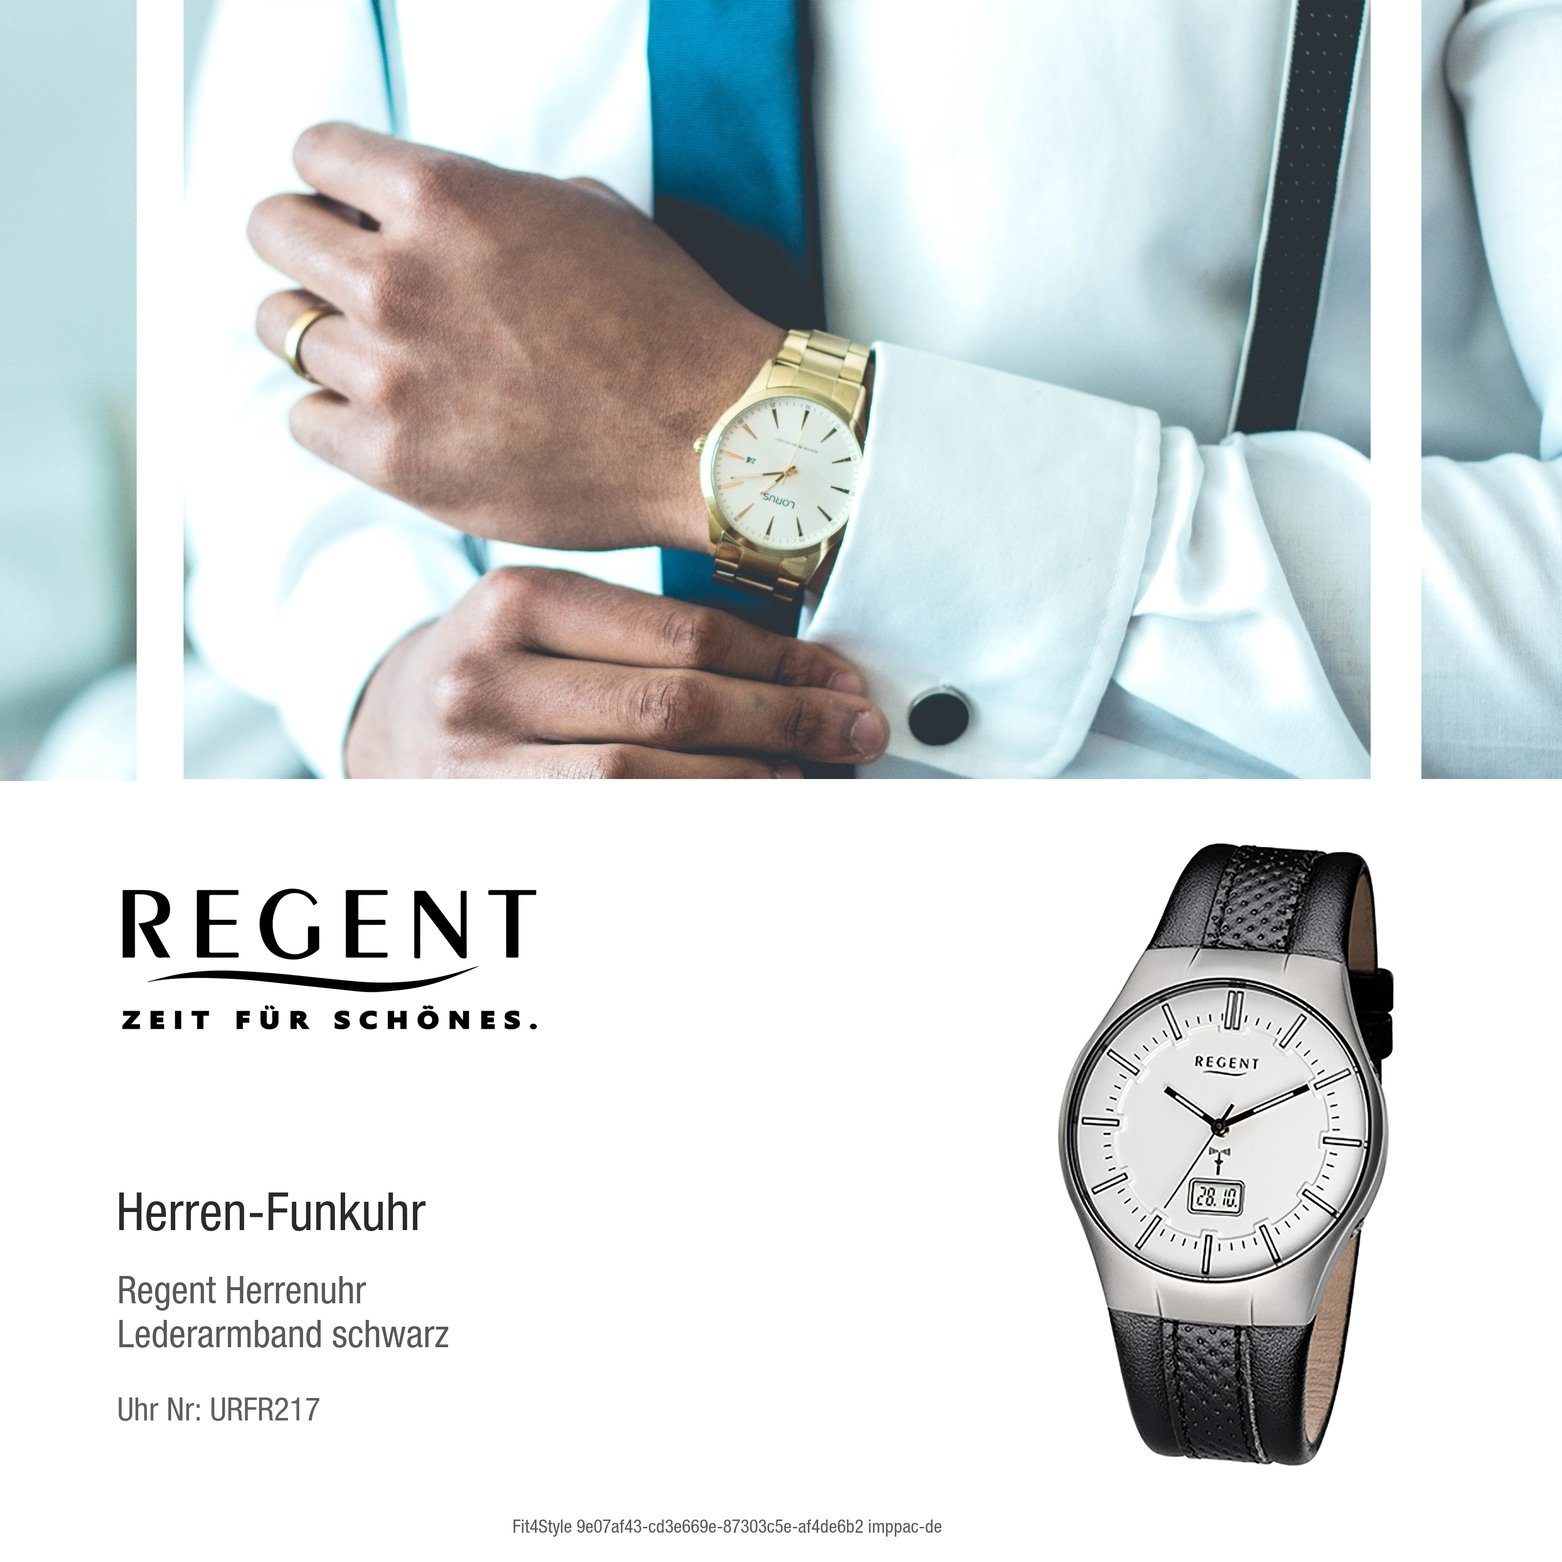 Regent Funkuhr Regent Herren-Armbanduhr schwarz, silber mittel (ca. Herren Funkuhr rund, 39mm), Lederarmband